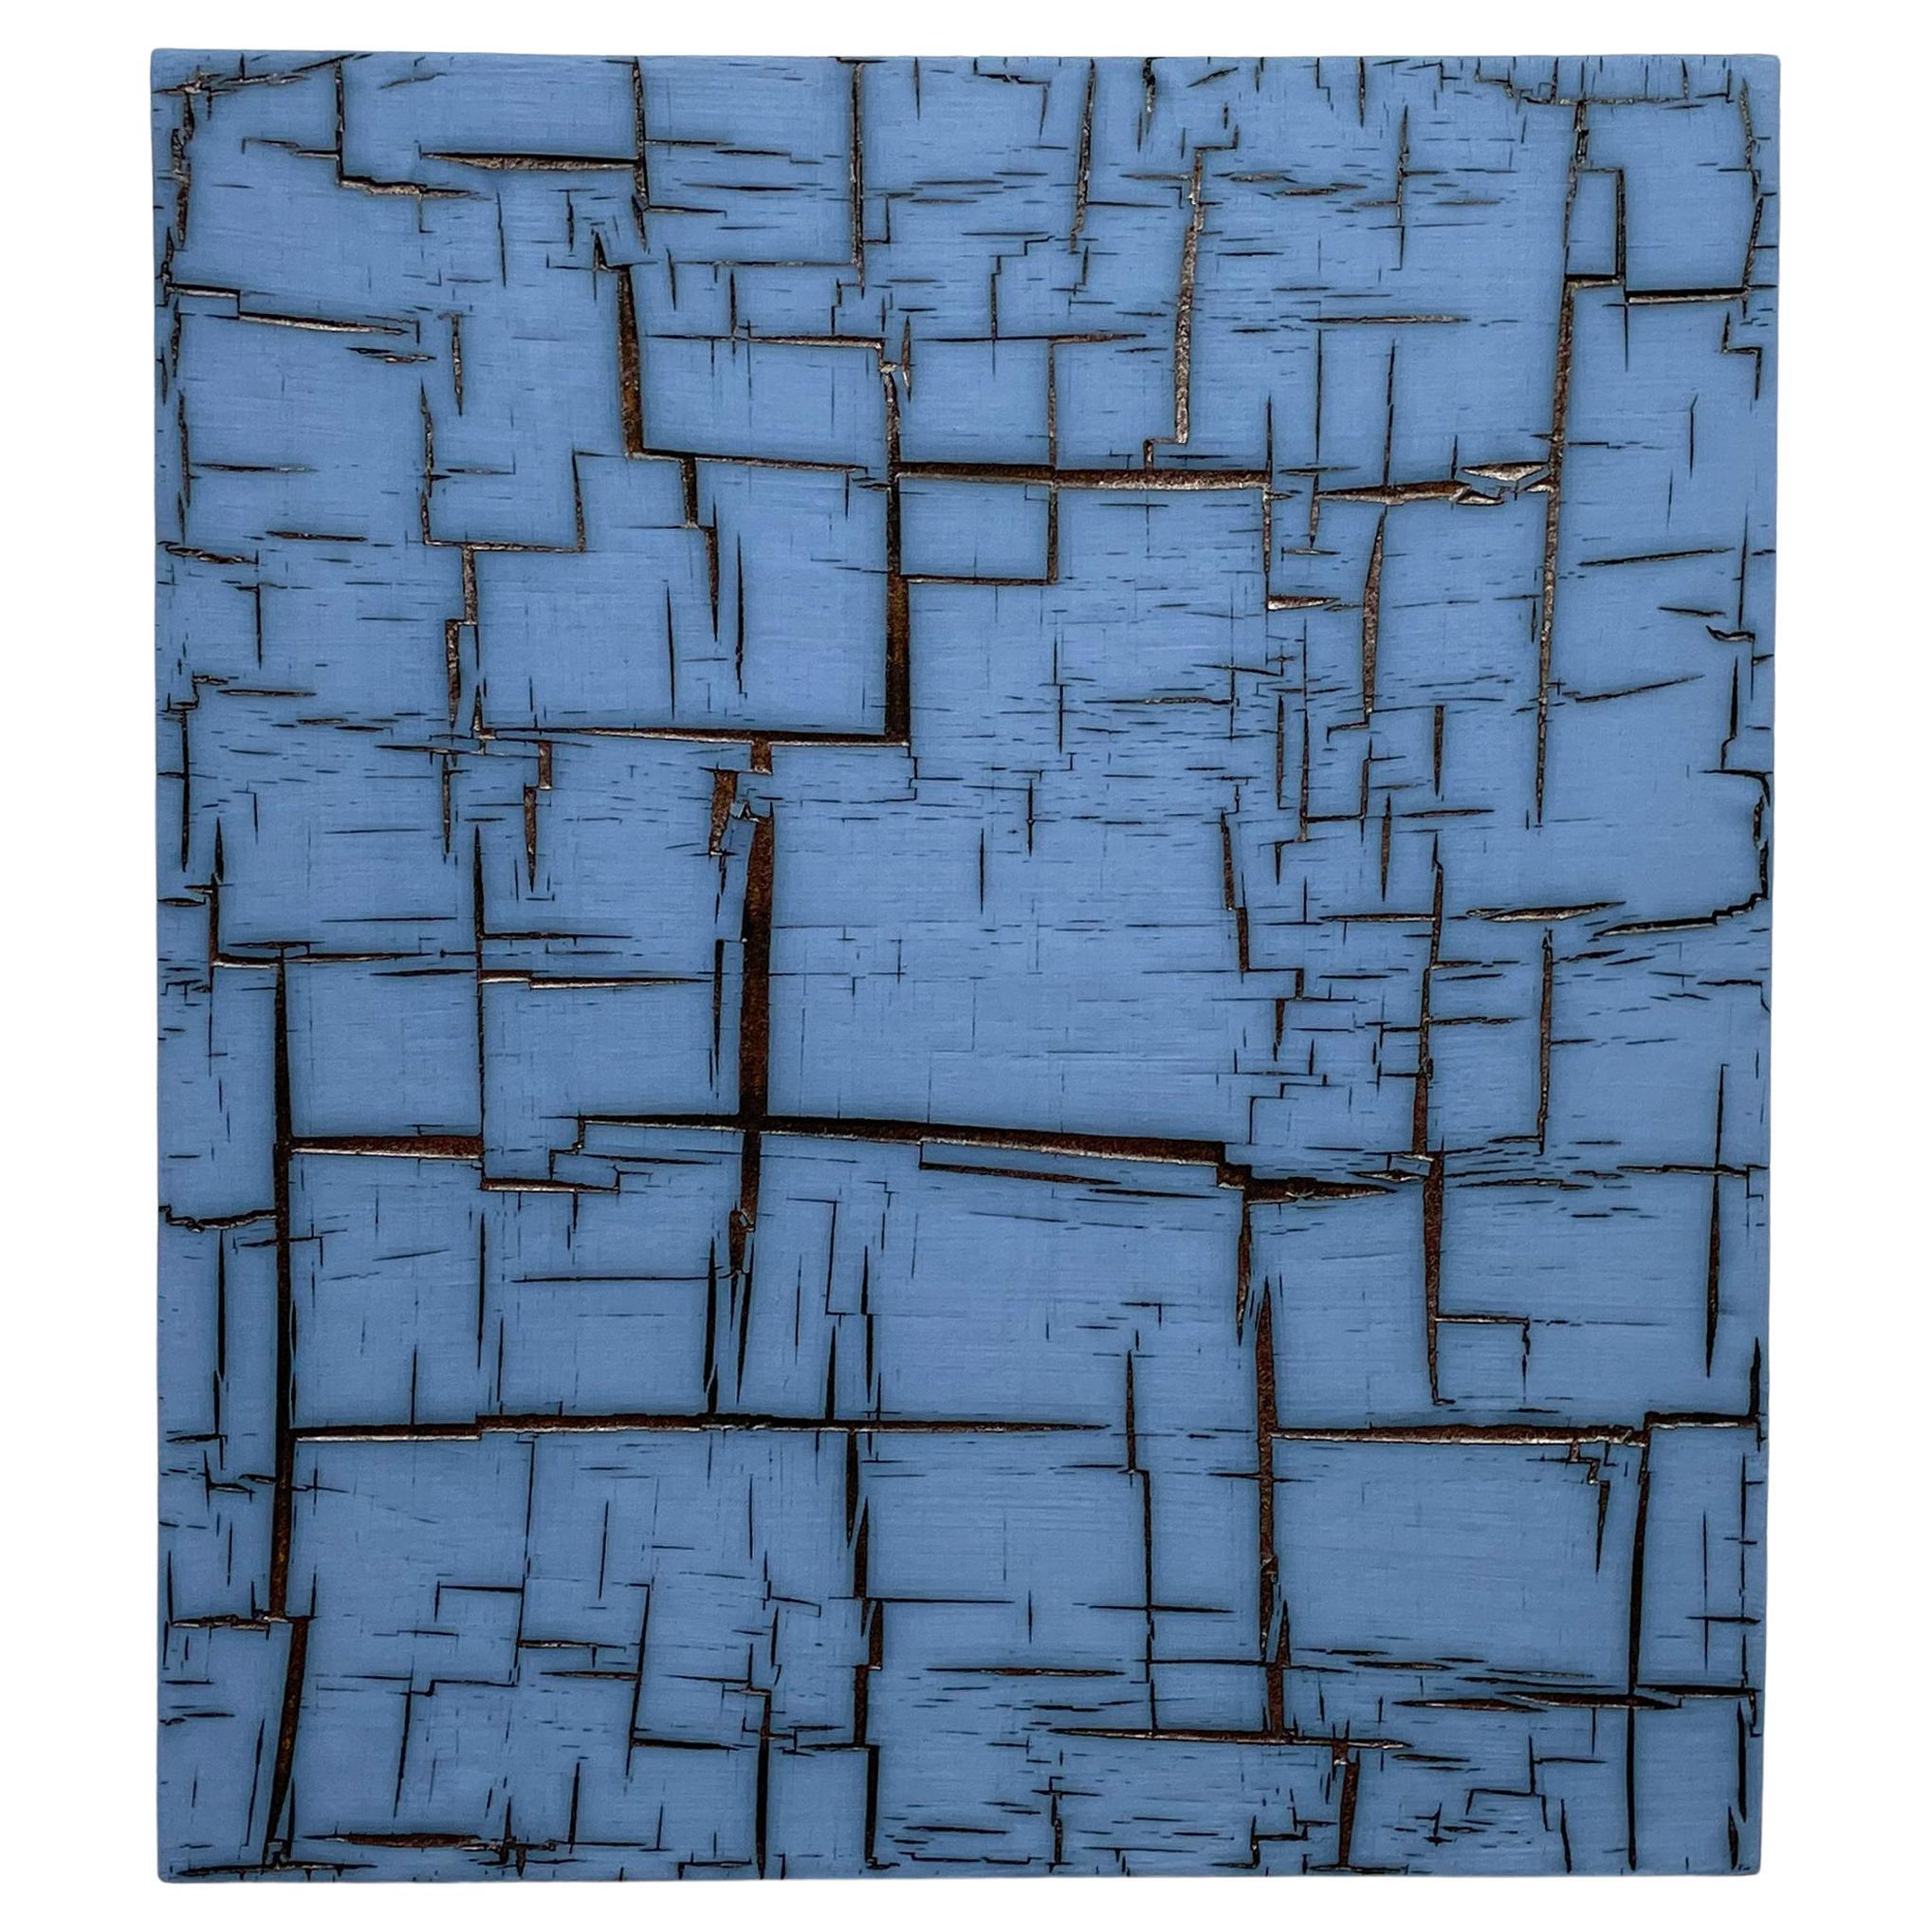 Matrix bleu - Art mural en céramique de William Edwards